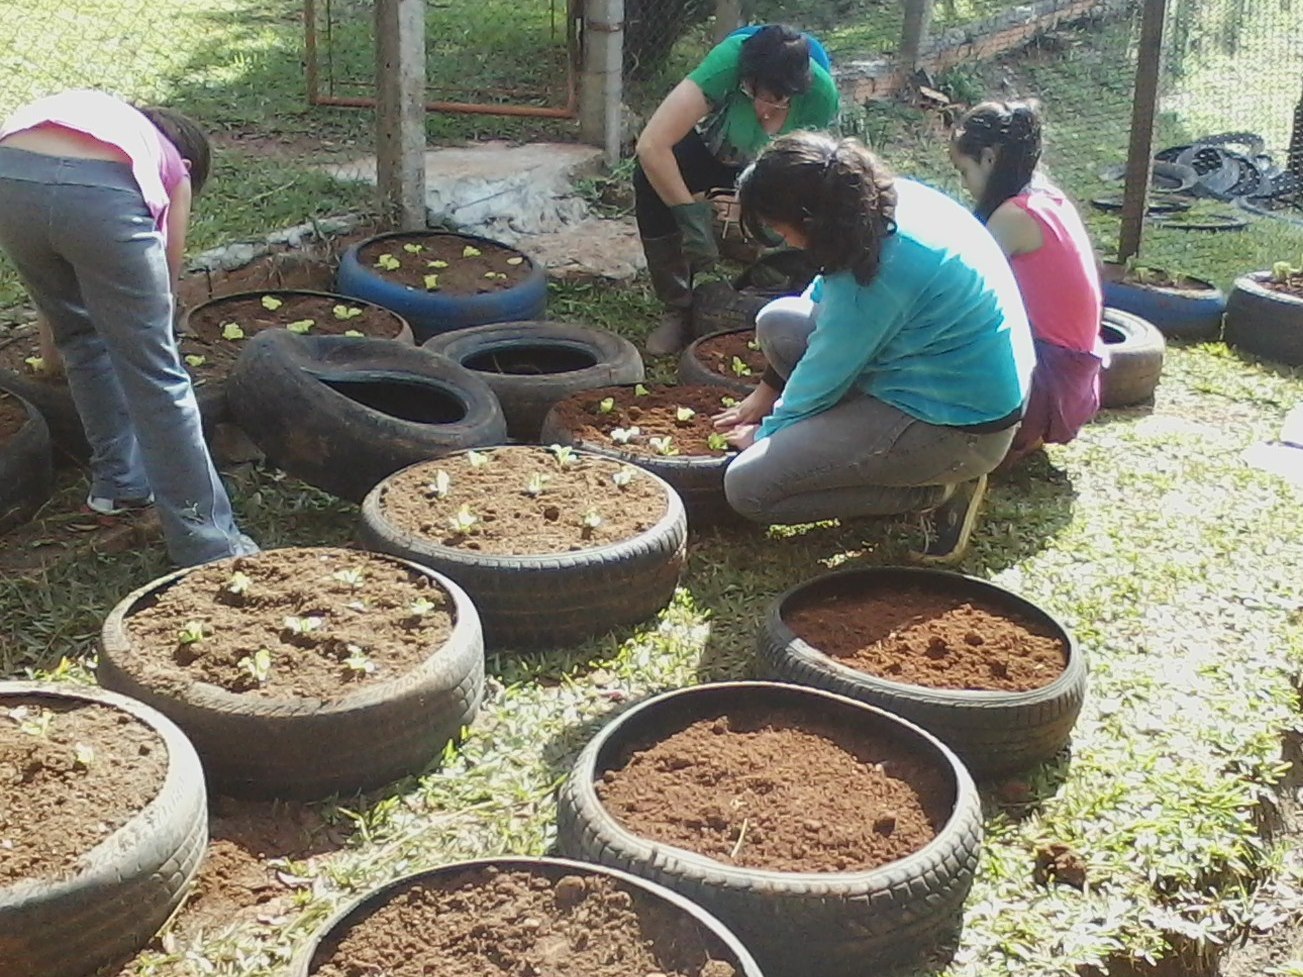 You are currently viewing Pneus são reutilizados para criação de horta escolar em Passos Maia